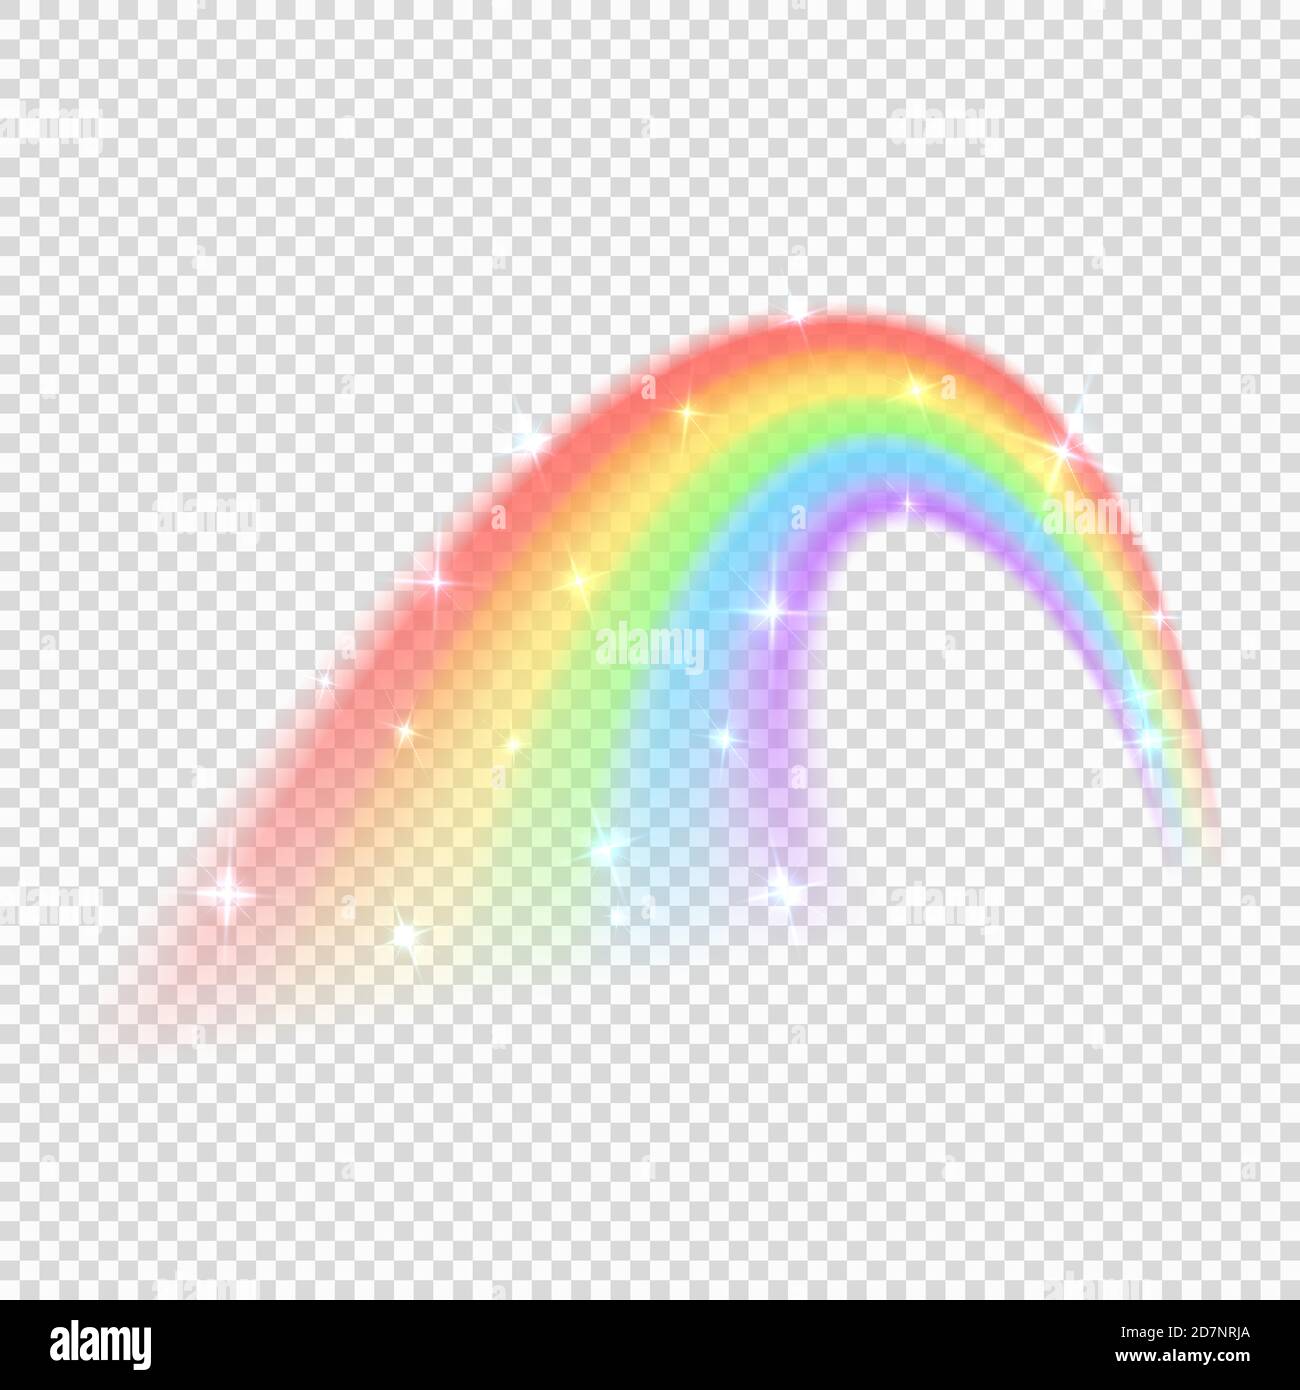 Shine rainbow vettore isolato su sfondo trasparente. Illustrazione della lucentezza colorata dell'arcobaleno, della luce naturale Illustrazione Vettoriale